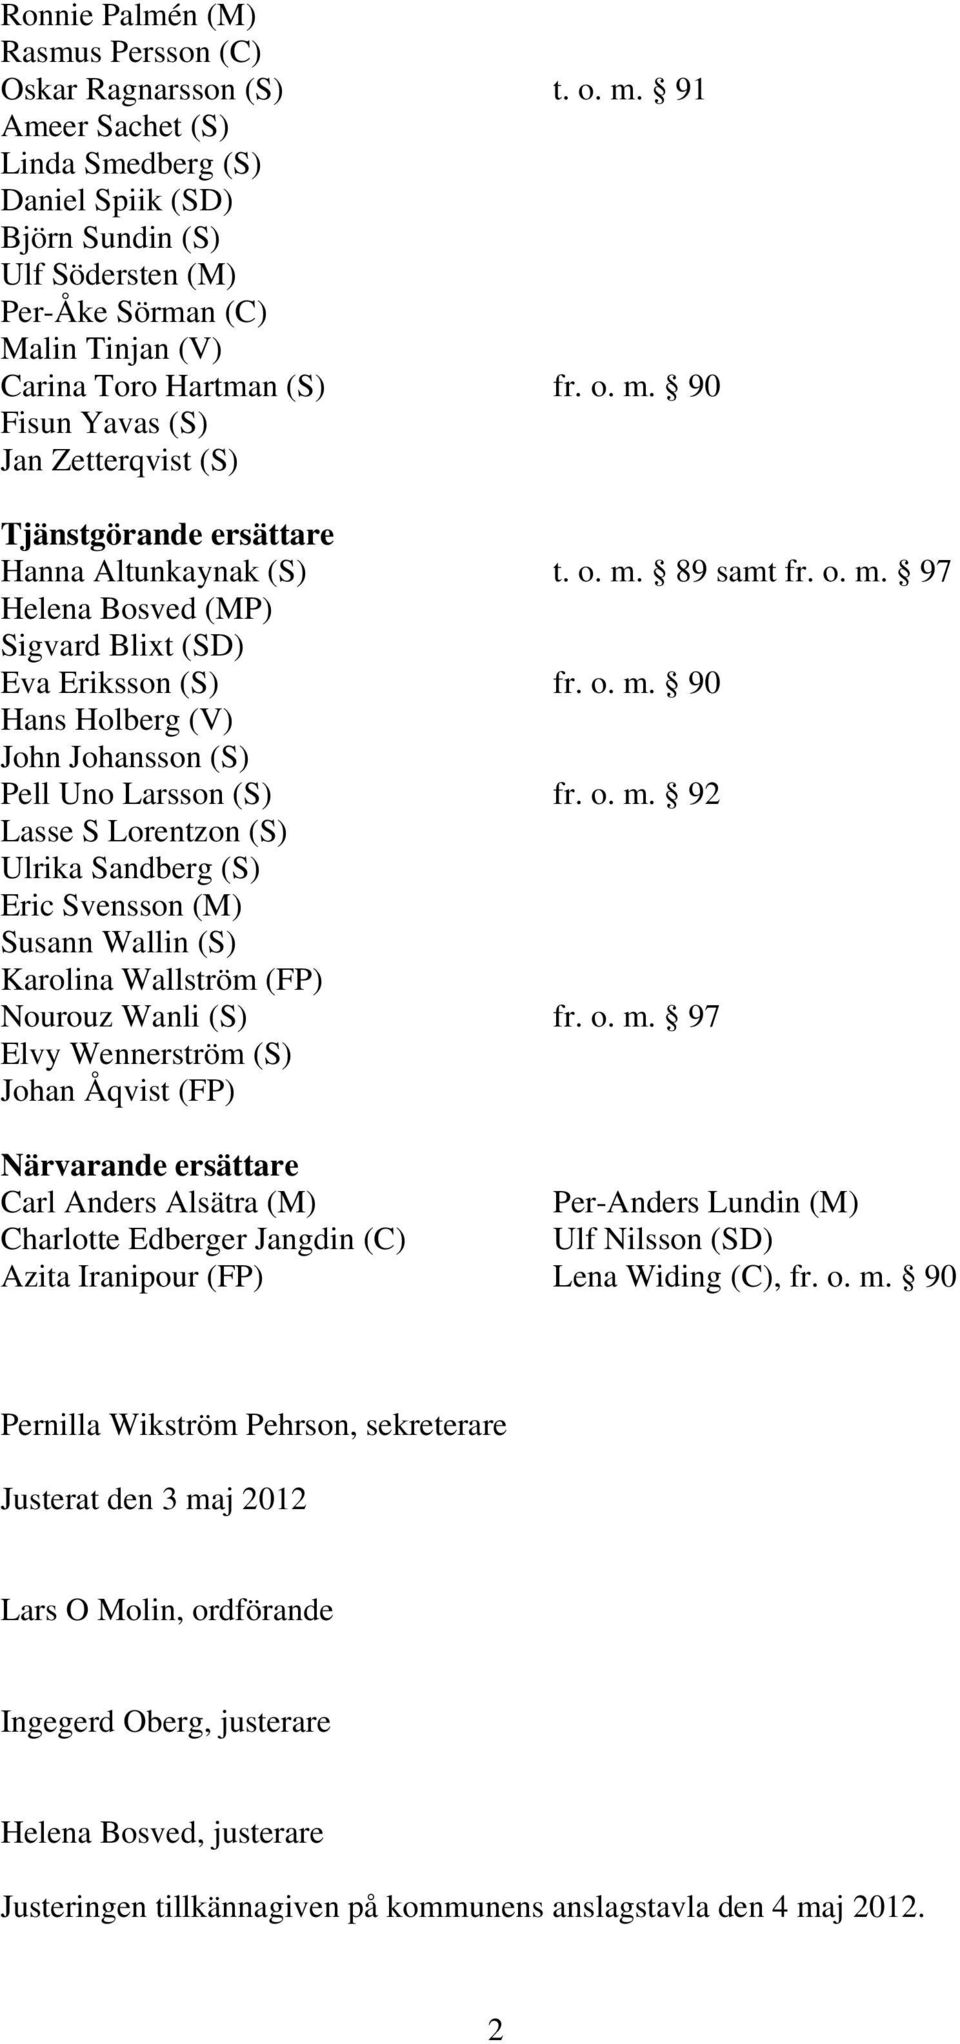 90 Fisun Yavas (S) Jan Zetterqvist (S) Tjänstgörande ersättare Hanna Altunkaynak (S) t. o. m. 89 samt fr. o. m. 97 Helena Bosved (MP) Sigvard Blixt (SD) Eva Eriksson (S) fr. o. m. 90 Hans Holberg (V) John Johansson (S) Pell Uno Larsson (S) fr.